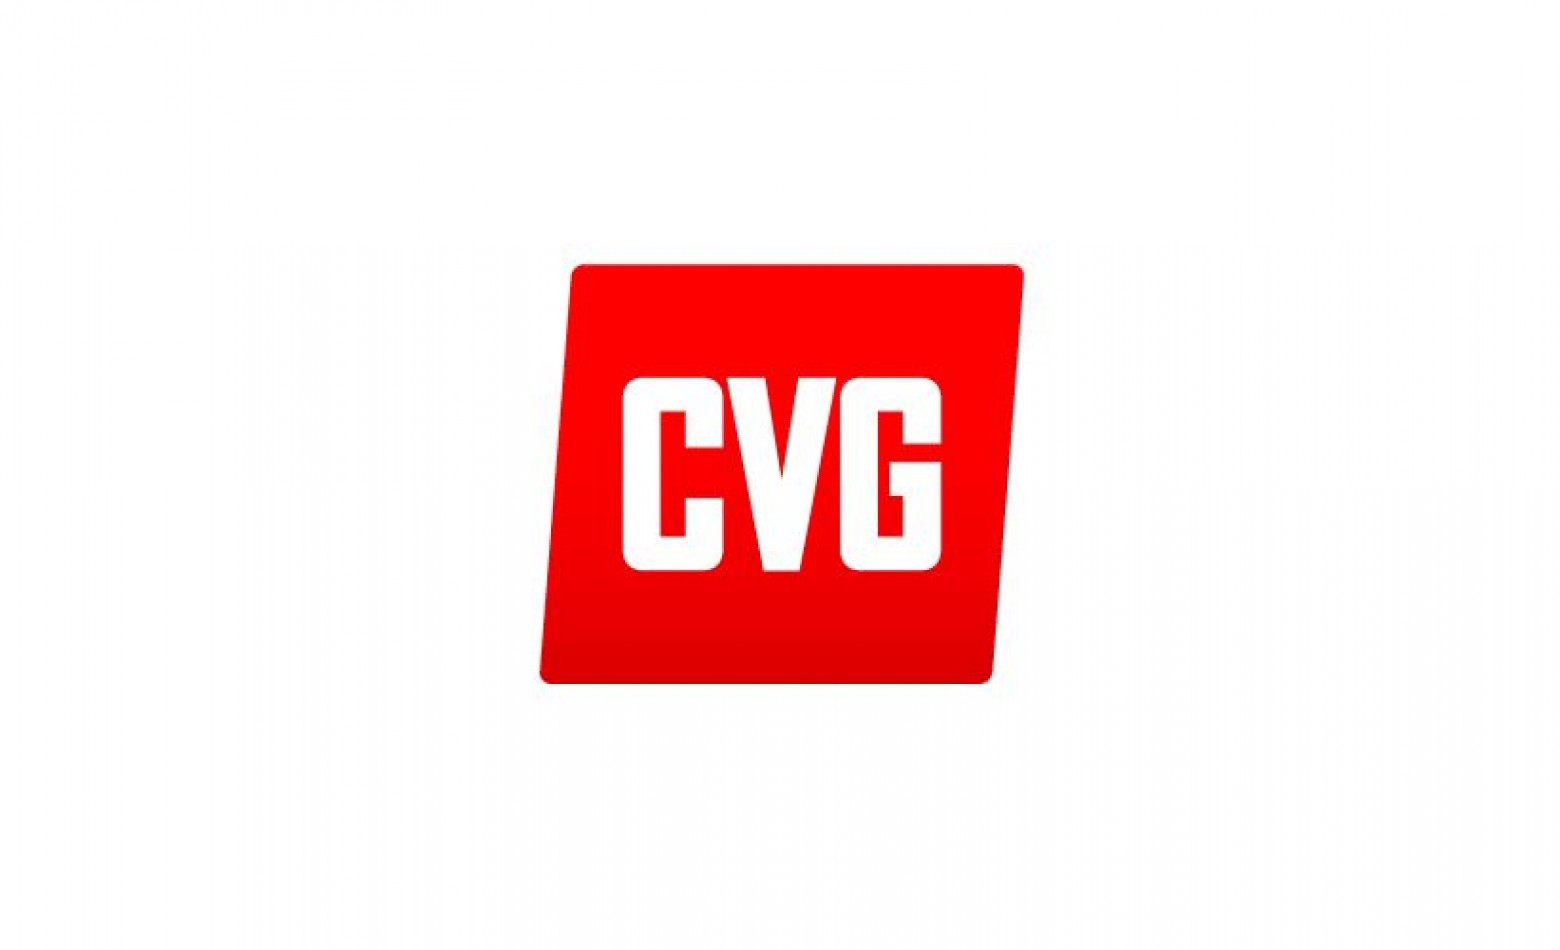 Site CVG será encerrado ainda neste ano